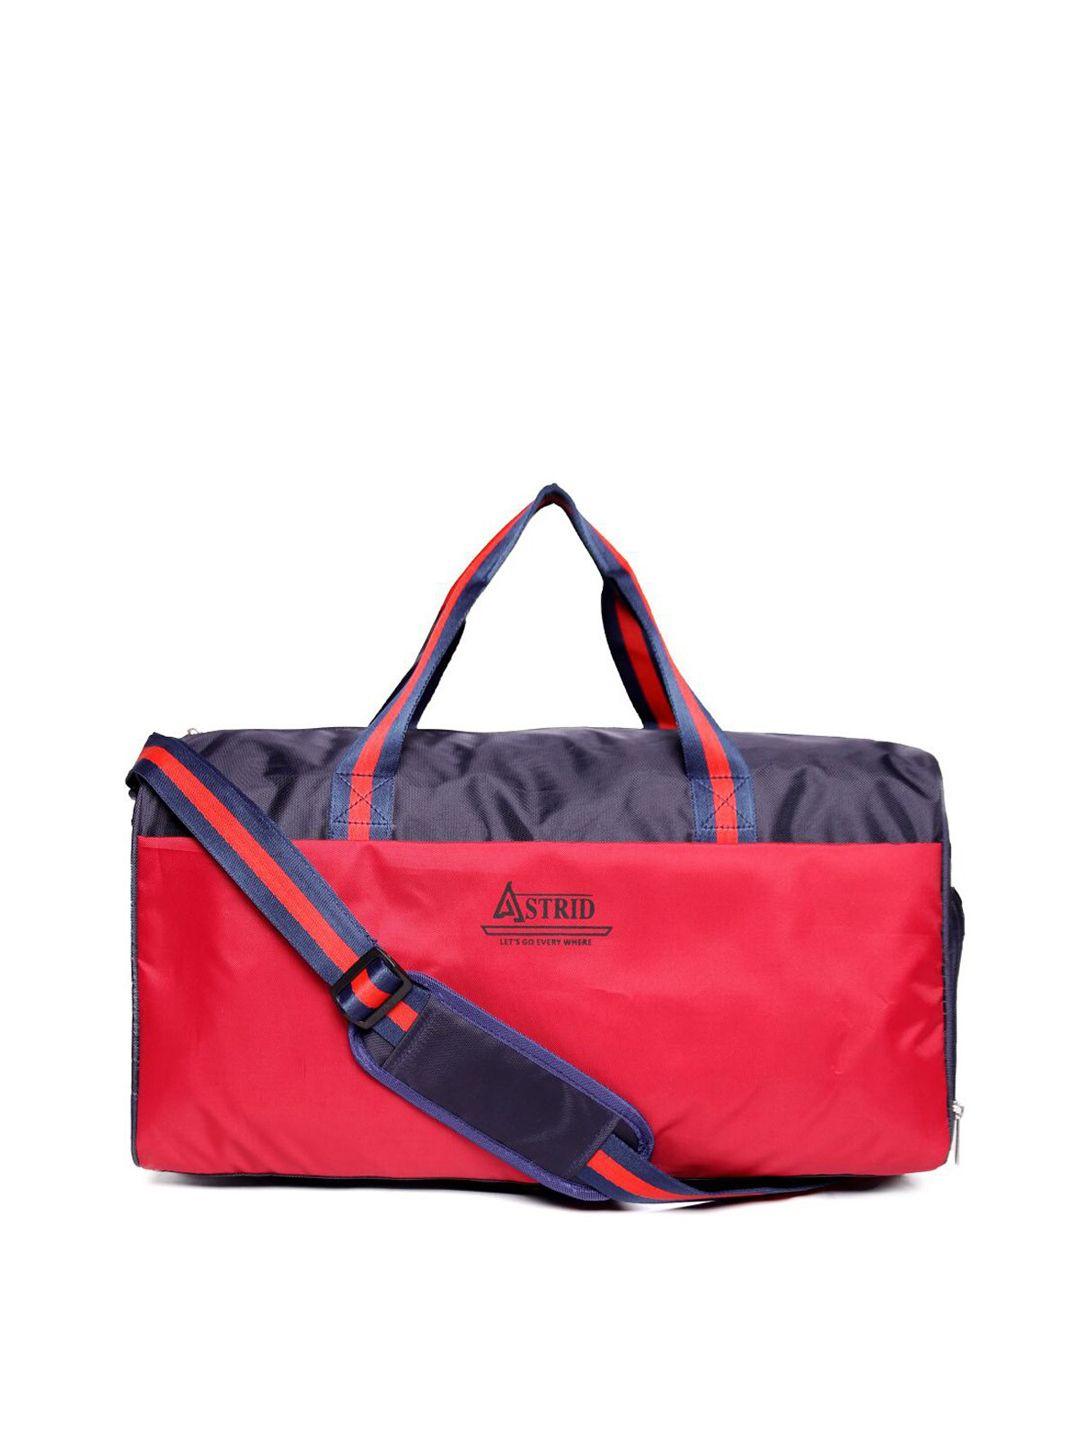 astrid men red solid duffel bag